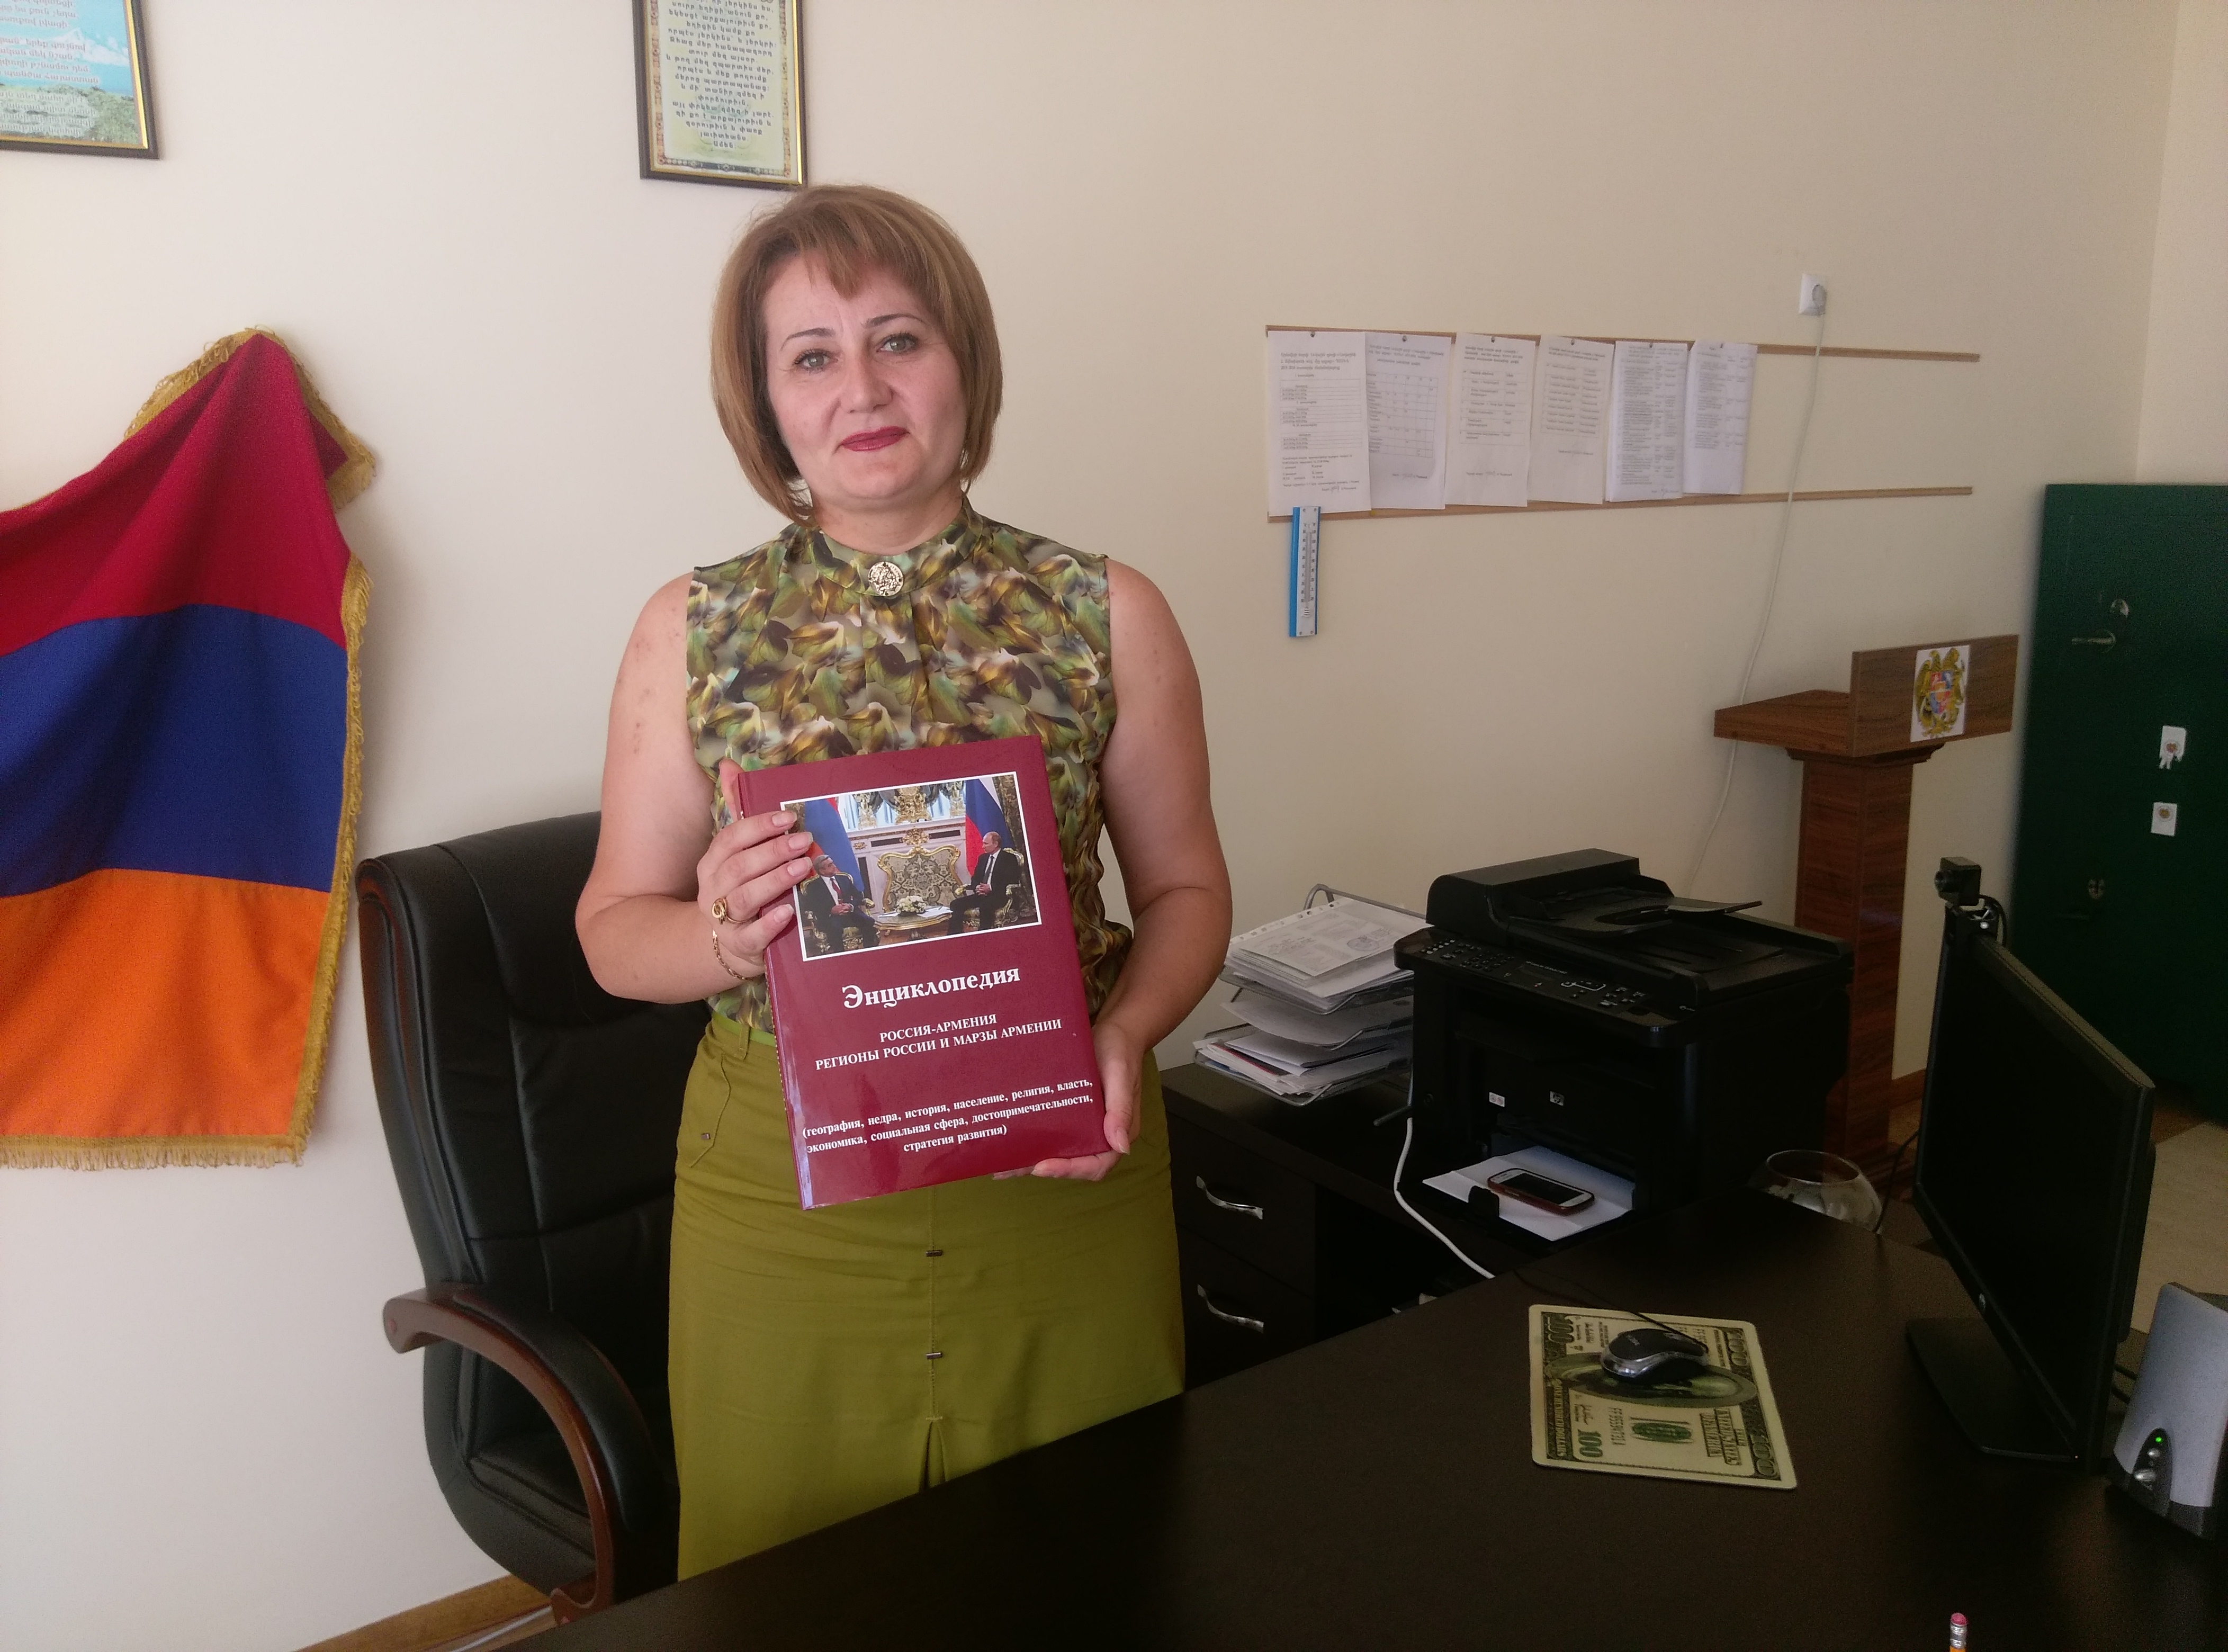 Ուսումնական տարվա մեկնարկի կապակցությամբ «Առէկսիմբանկ-Գազպրոմբանկի խումբե ՓԲԸ-ն Արմավիրի մարզի դպրոցներին յուրահատուկ հանրագիտարան է նվիրել